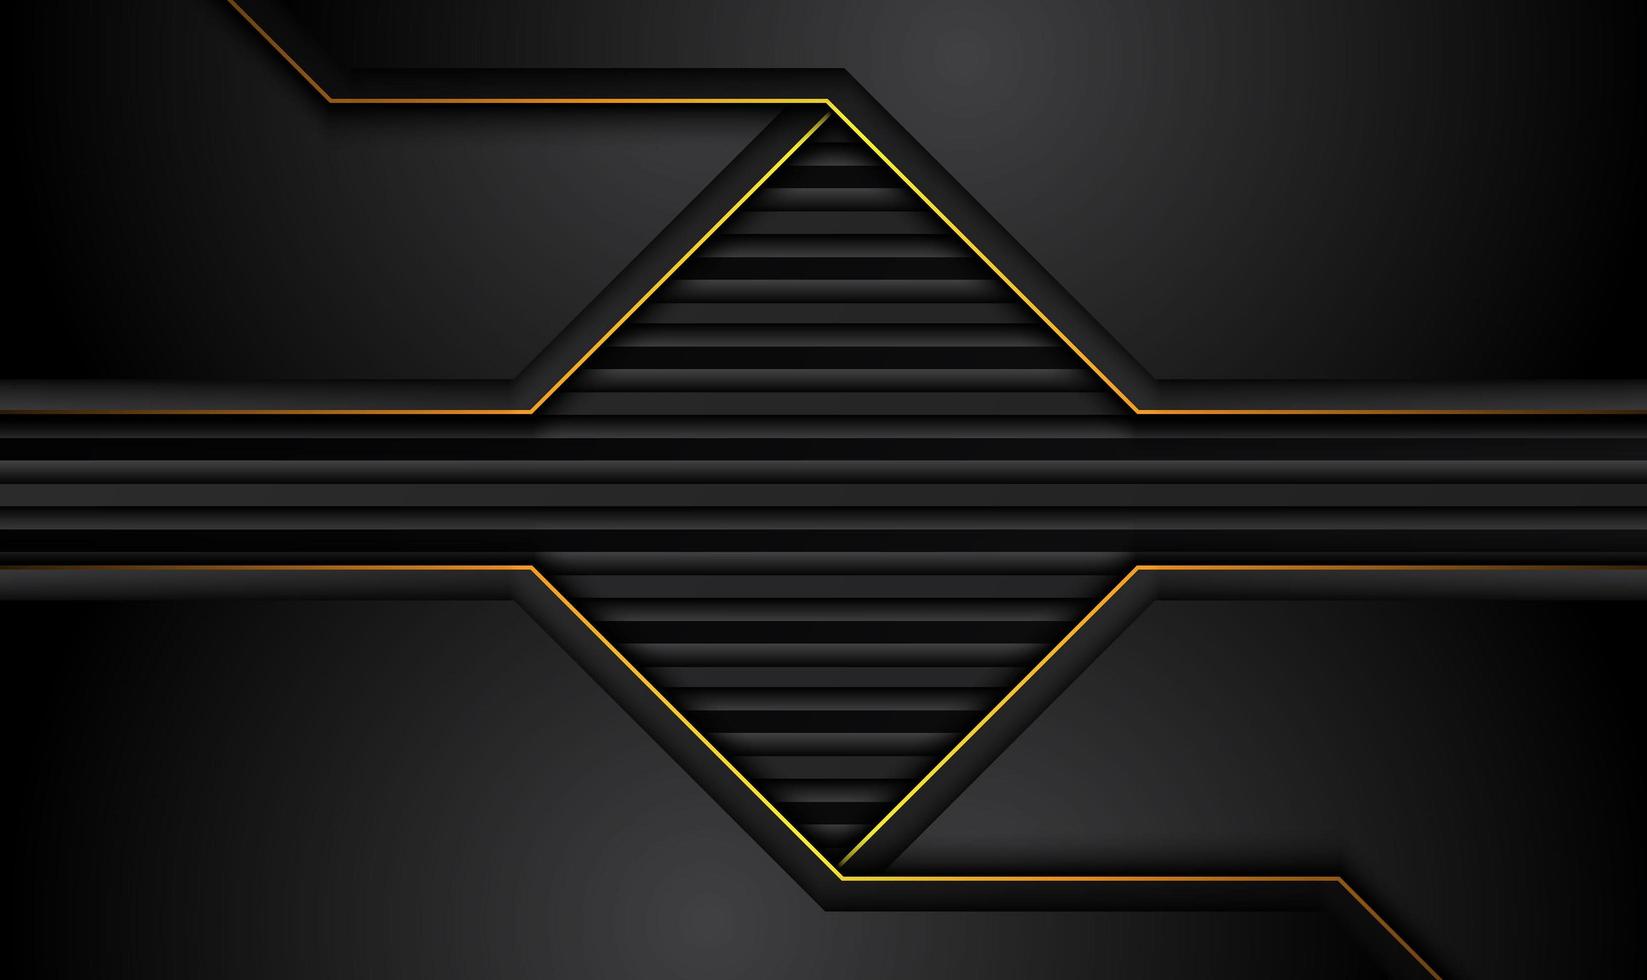 Tech-schwarzer Hintergrund mit orange-gelben Kontraststreifen. abstraktes Vektorgrafik-Broschürendesign vektor